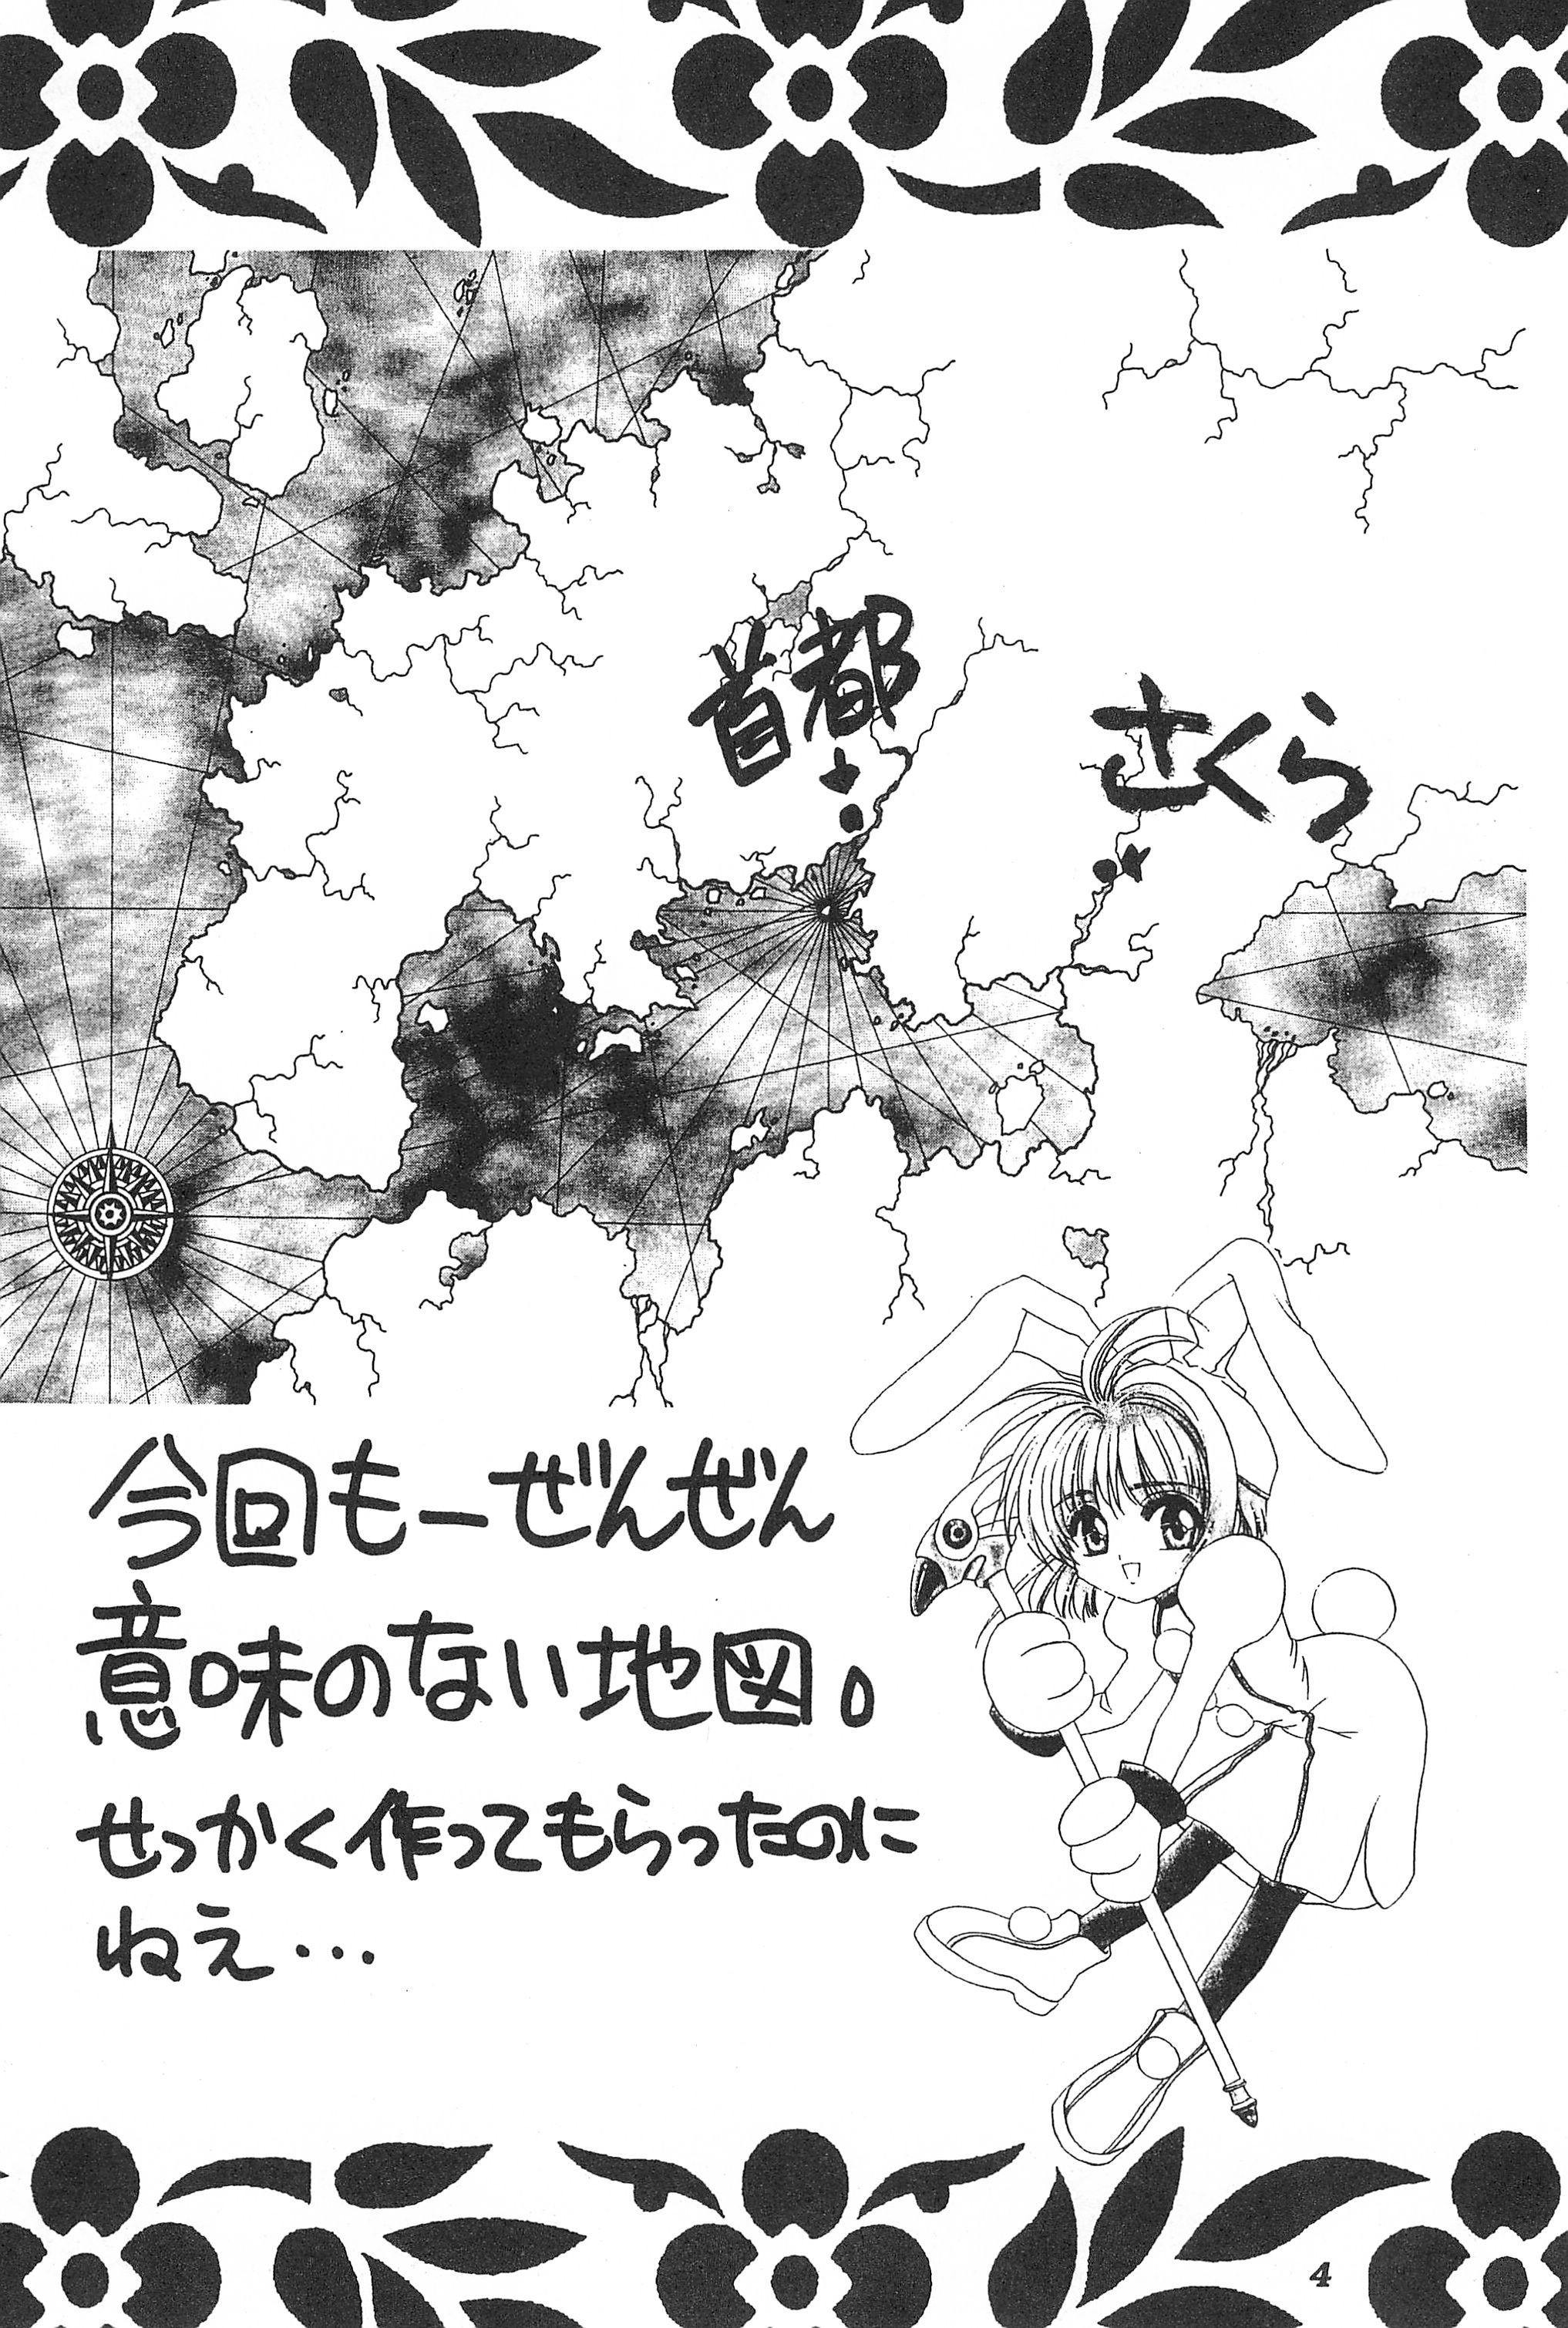 Casado Akatsuki Teikoku 3 - Cardcaptor sakura Puto - Page 6